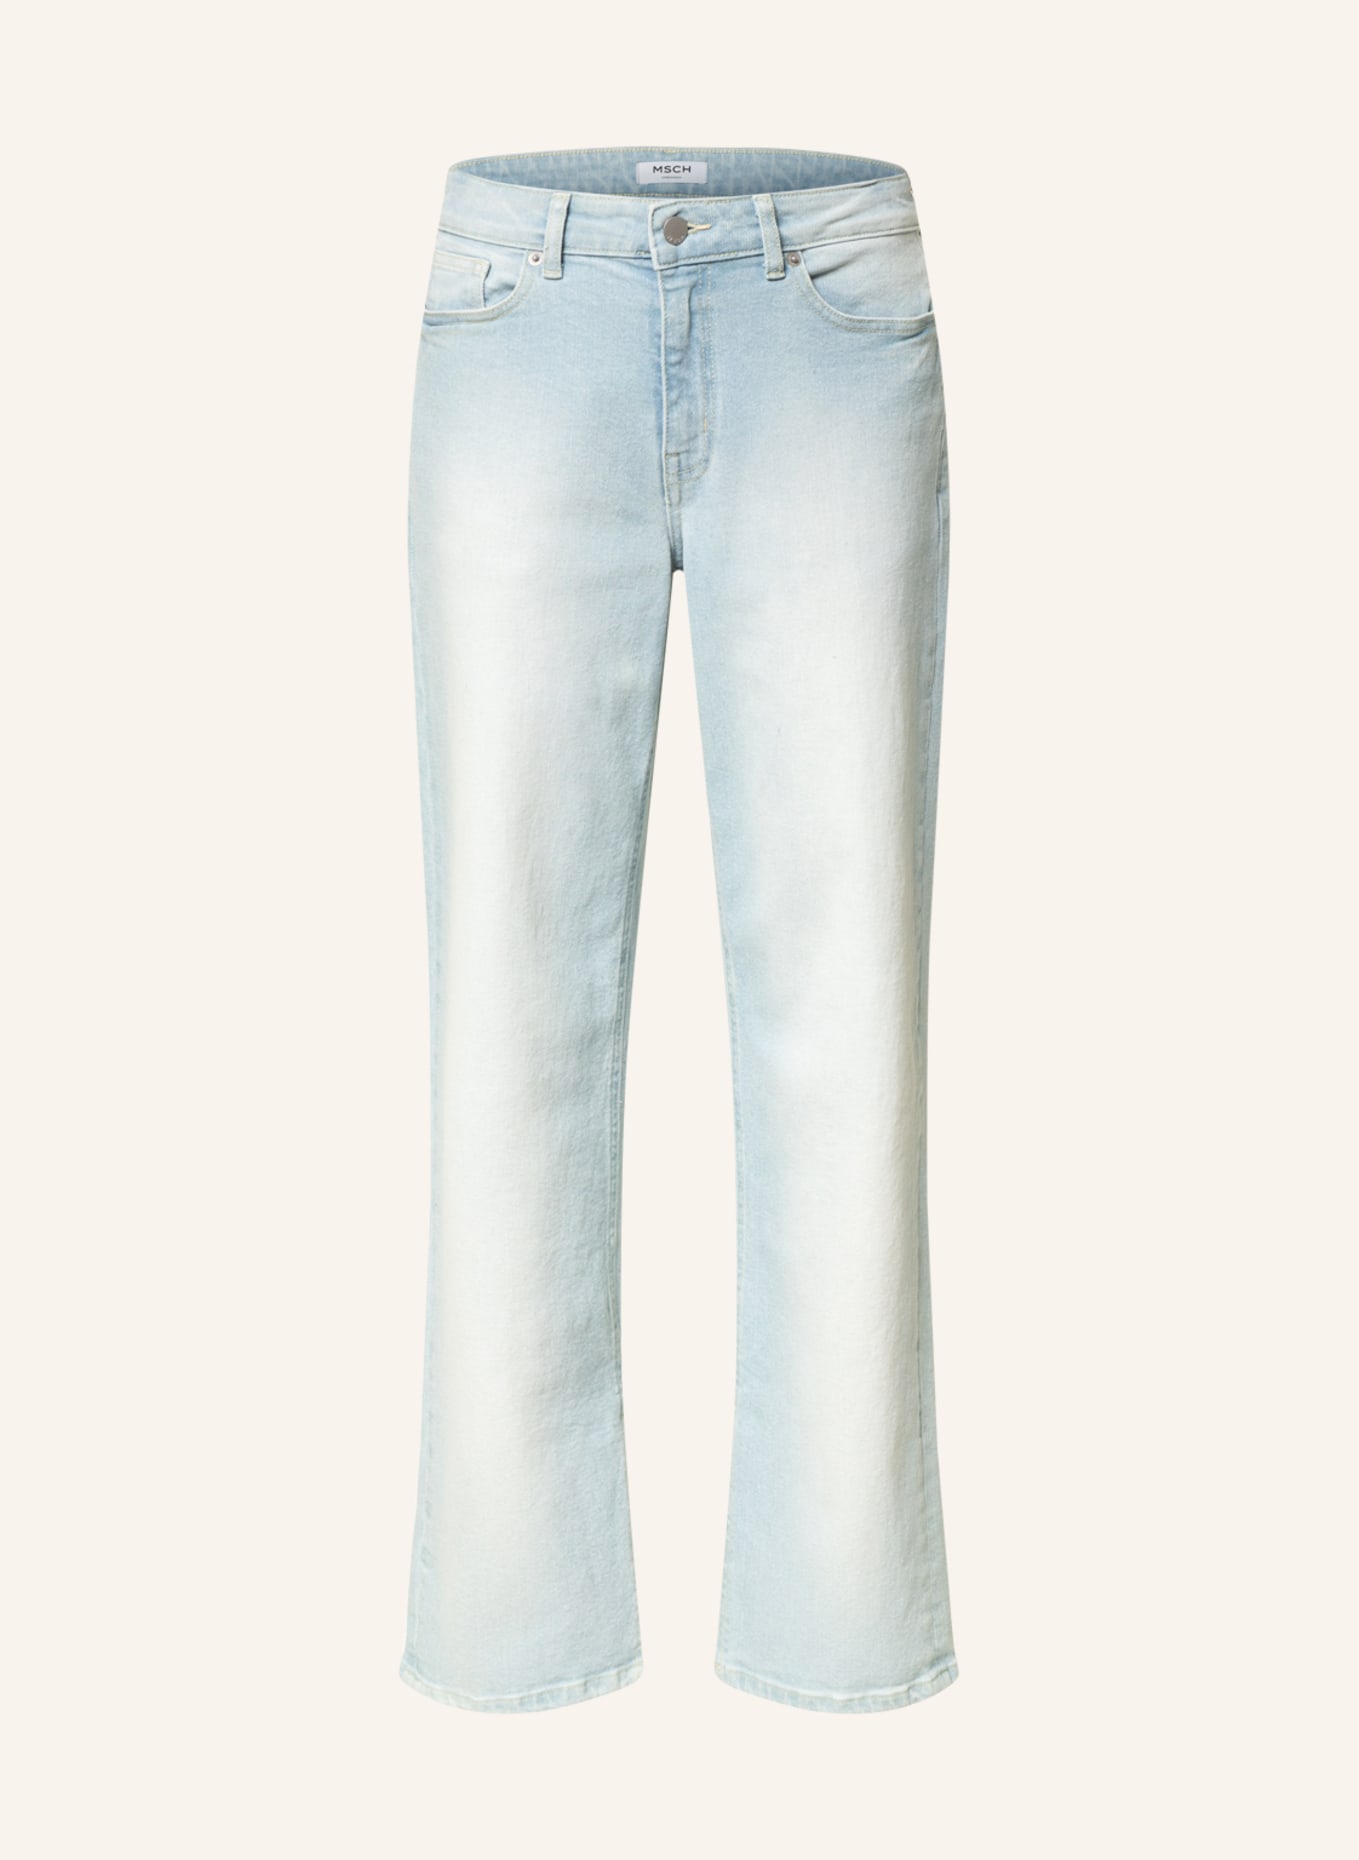 MSCH COPENHAGEN Flared Jeans ABRIL RIKKA, Farbe: Light Blue Wash (Bild 1)